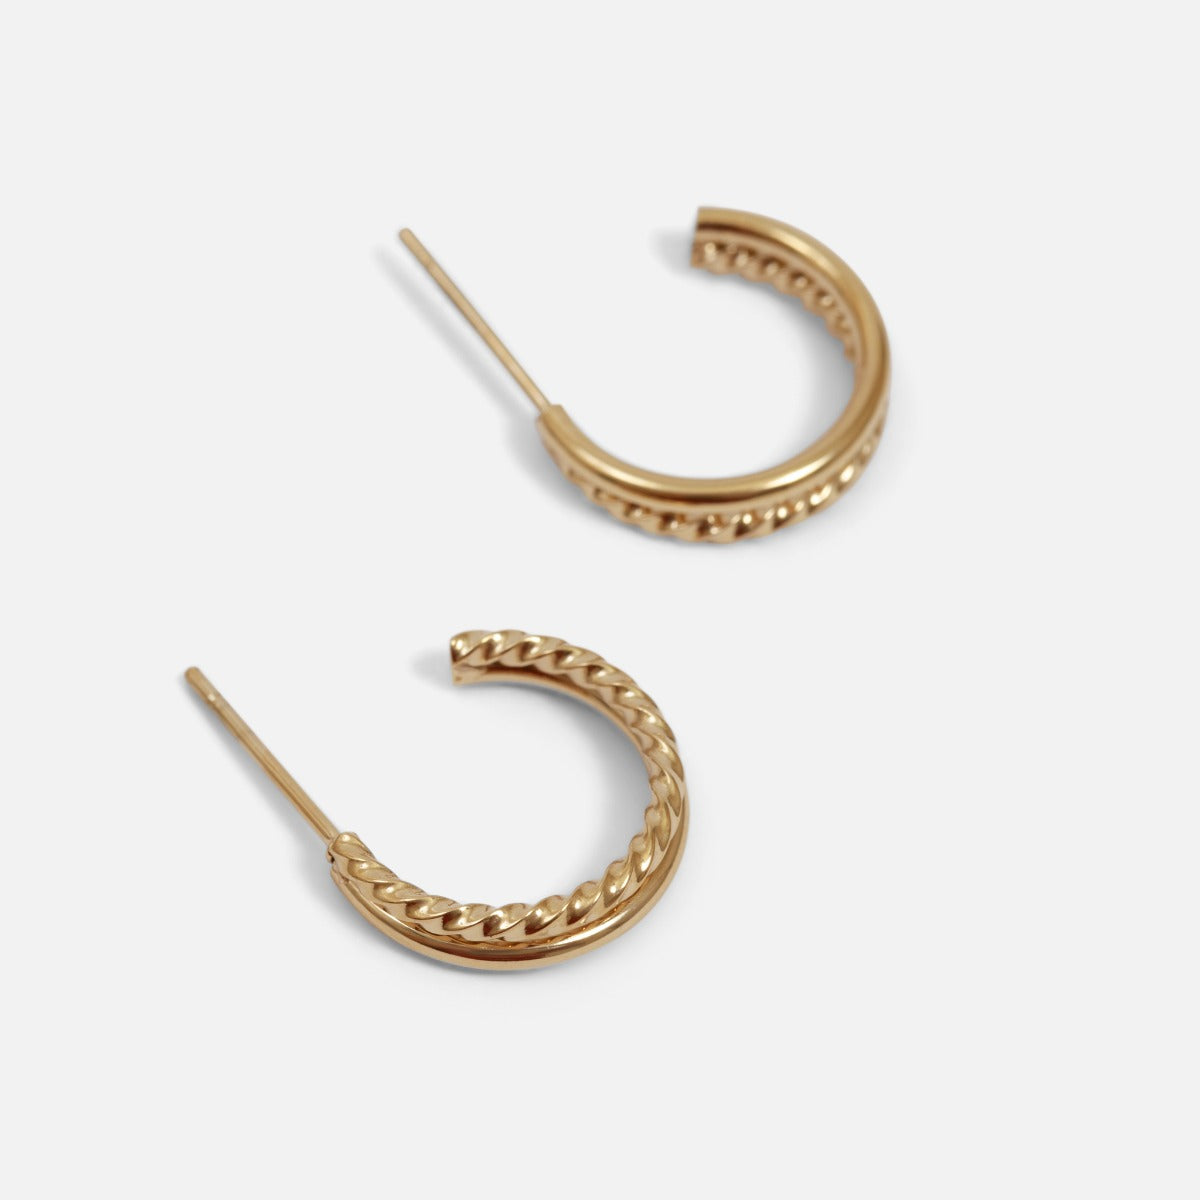 Double stainless steel golden hoops earrings